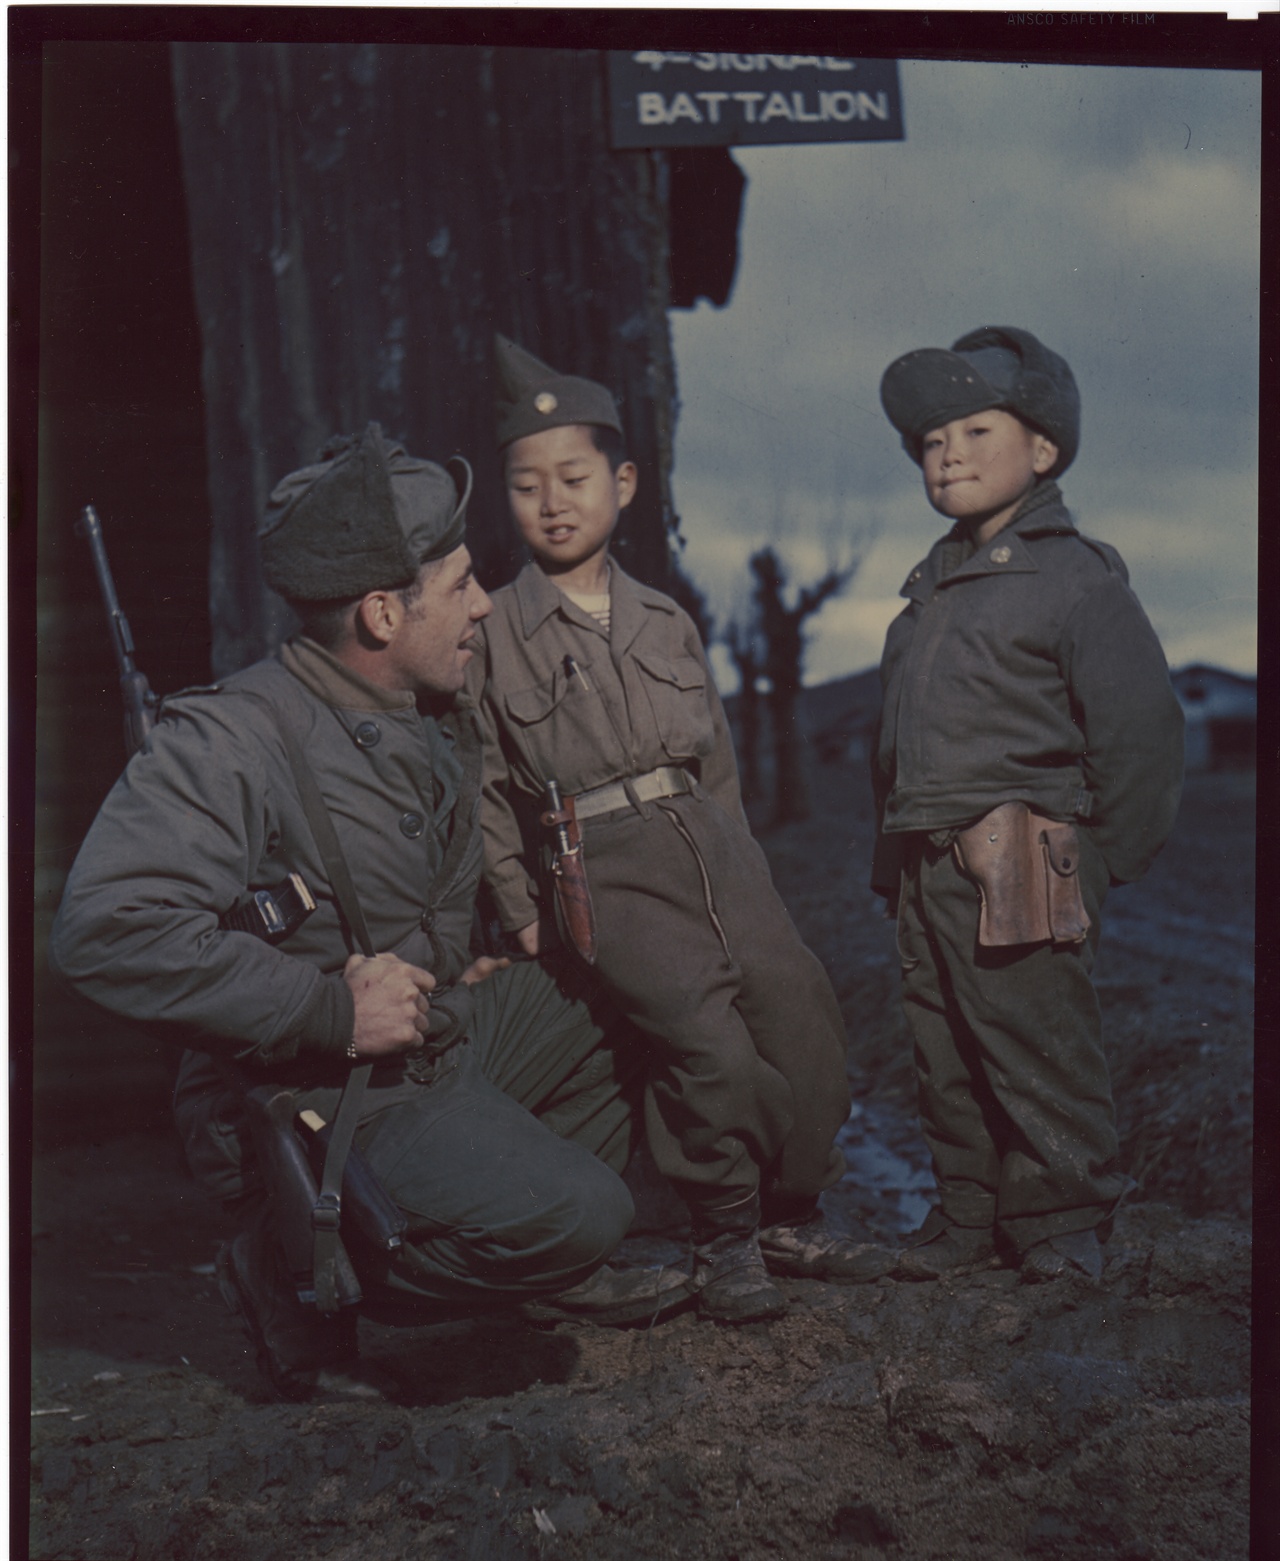  1951. 3. 1. 전주. 미군 부대에서 지내는 두 소년, 그 무렵에는 이들을 ‘하우스보이’라고 불렀다. 이들은 대부분 해외로 입양되었다.